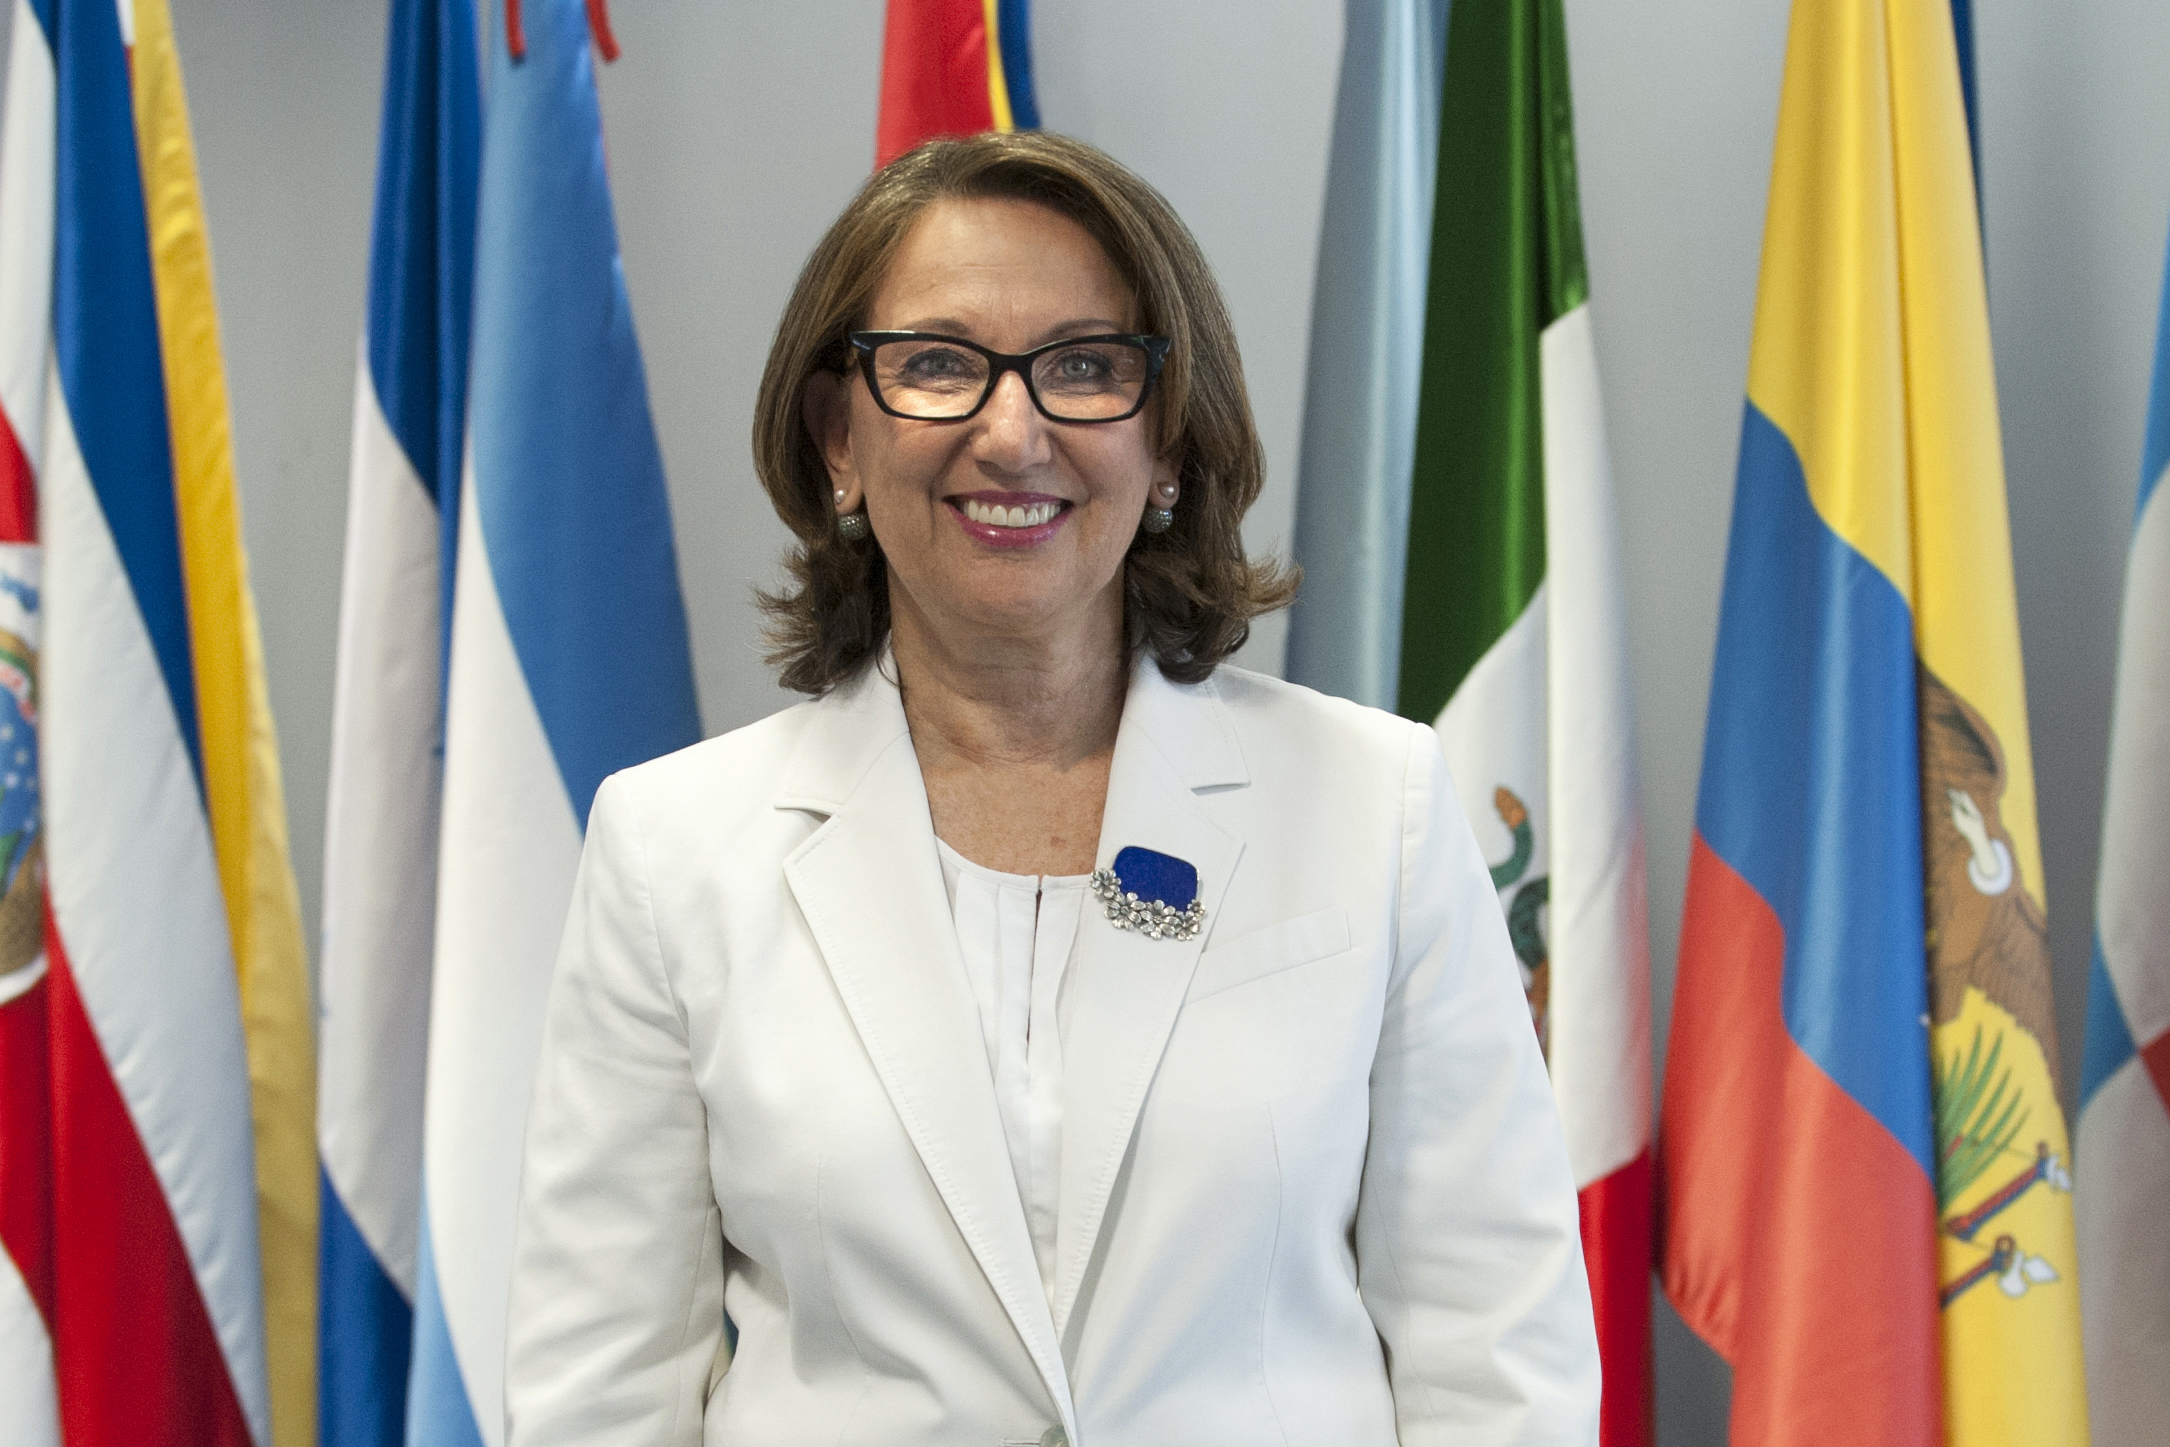 Rebeca Grynspan descarta aspiración presidencial tras solicitud de expresidente Arias